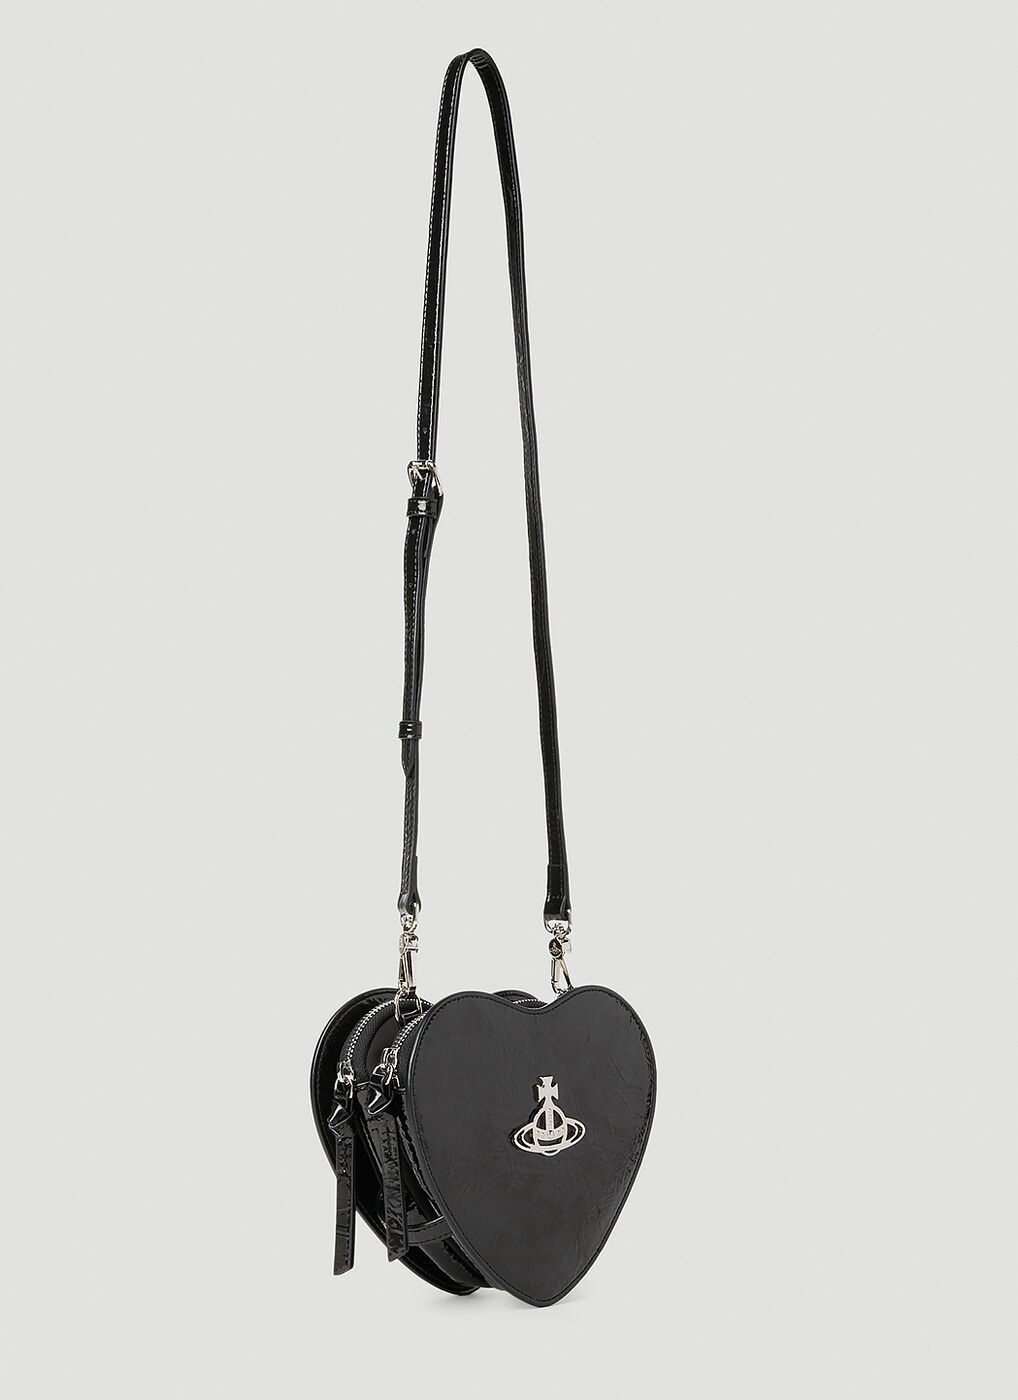 Vivienne Westwood Heart-shaped Crossbody Bag in Black